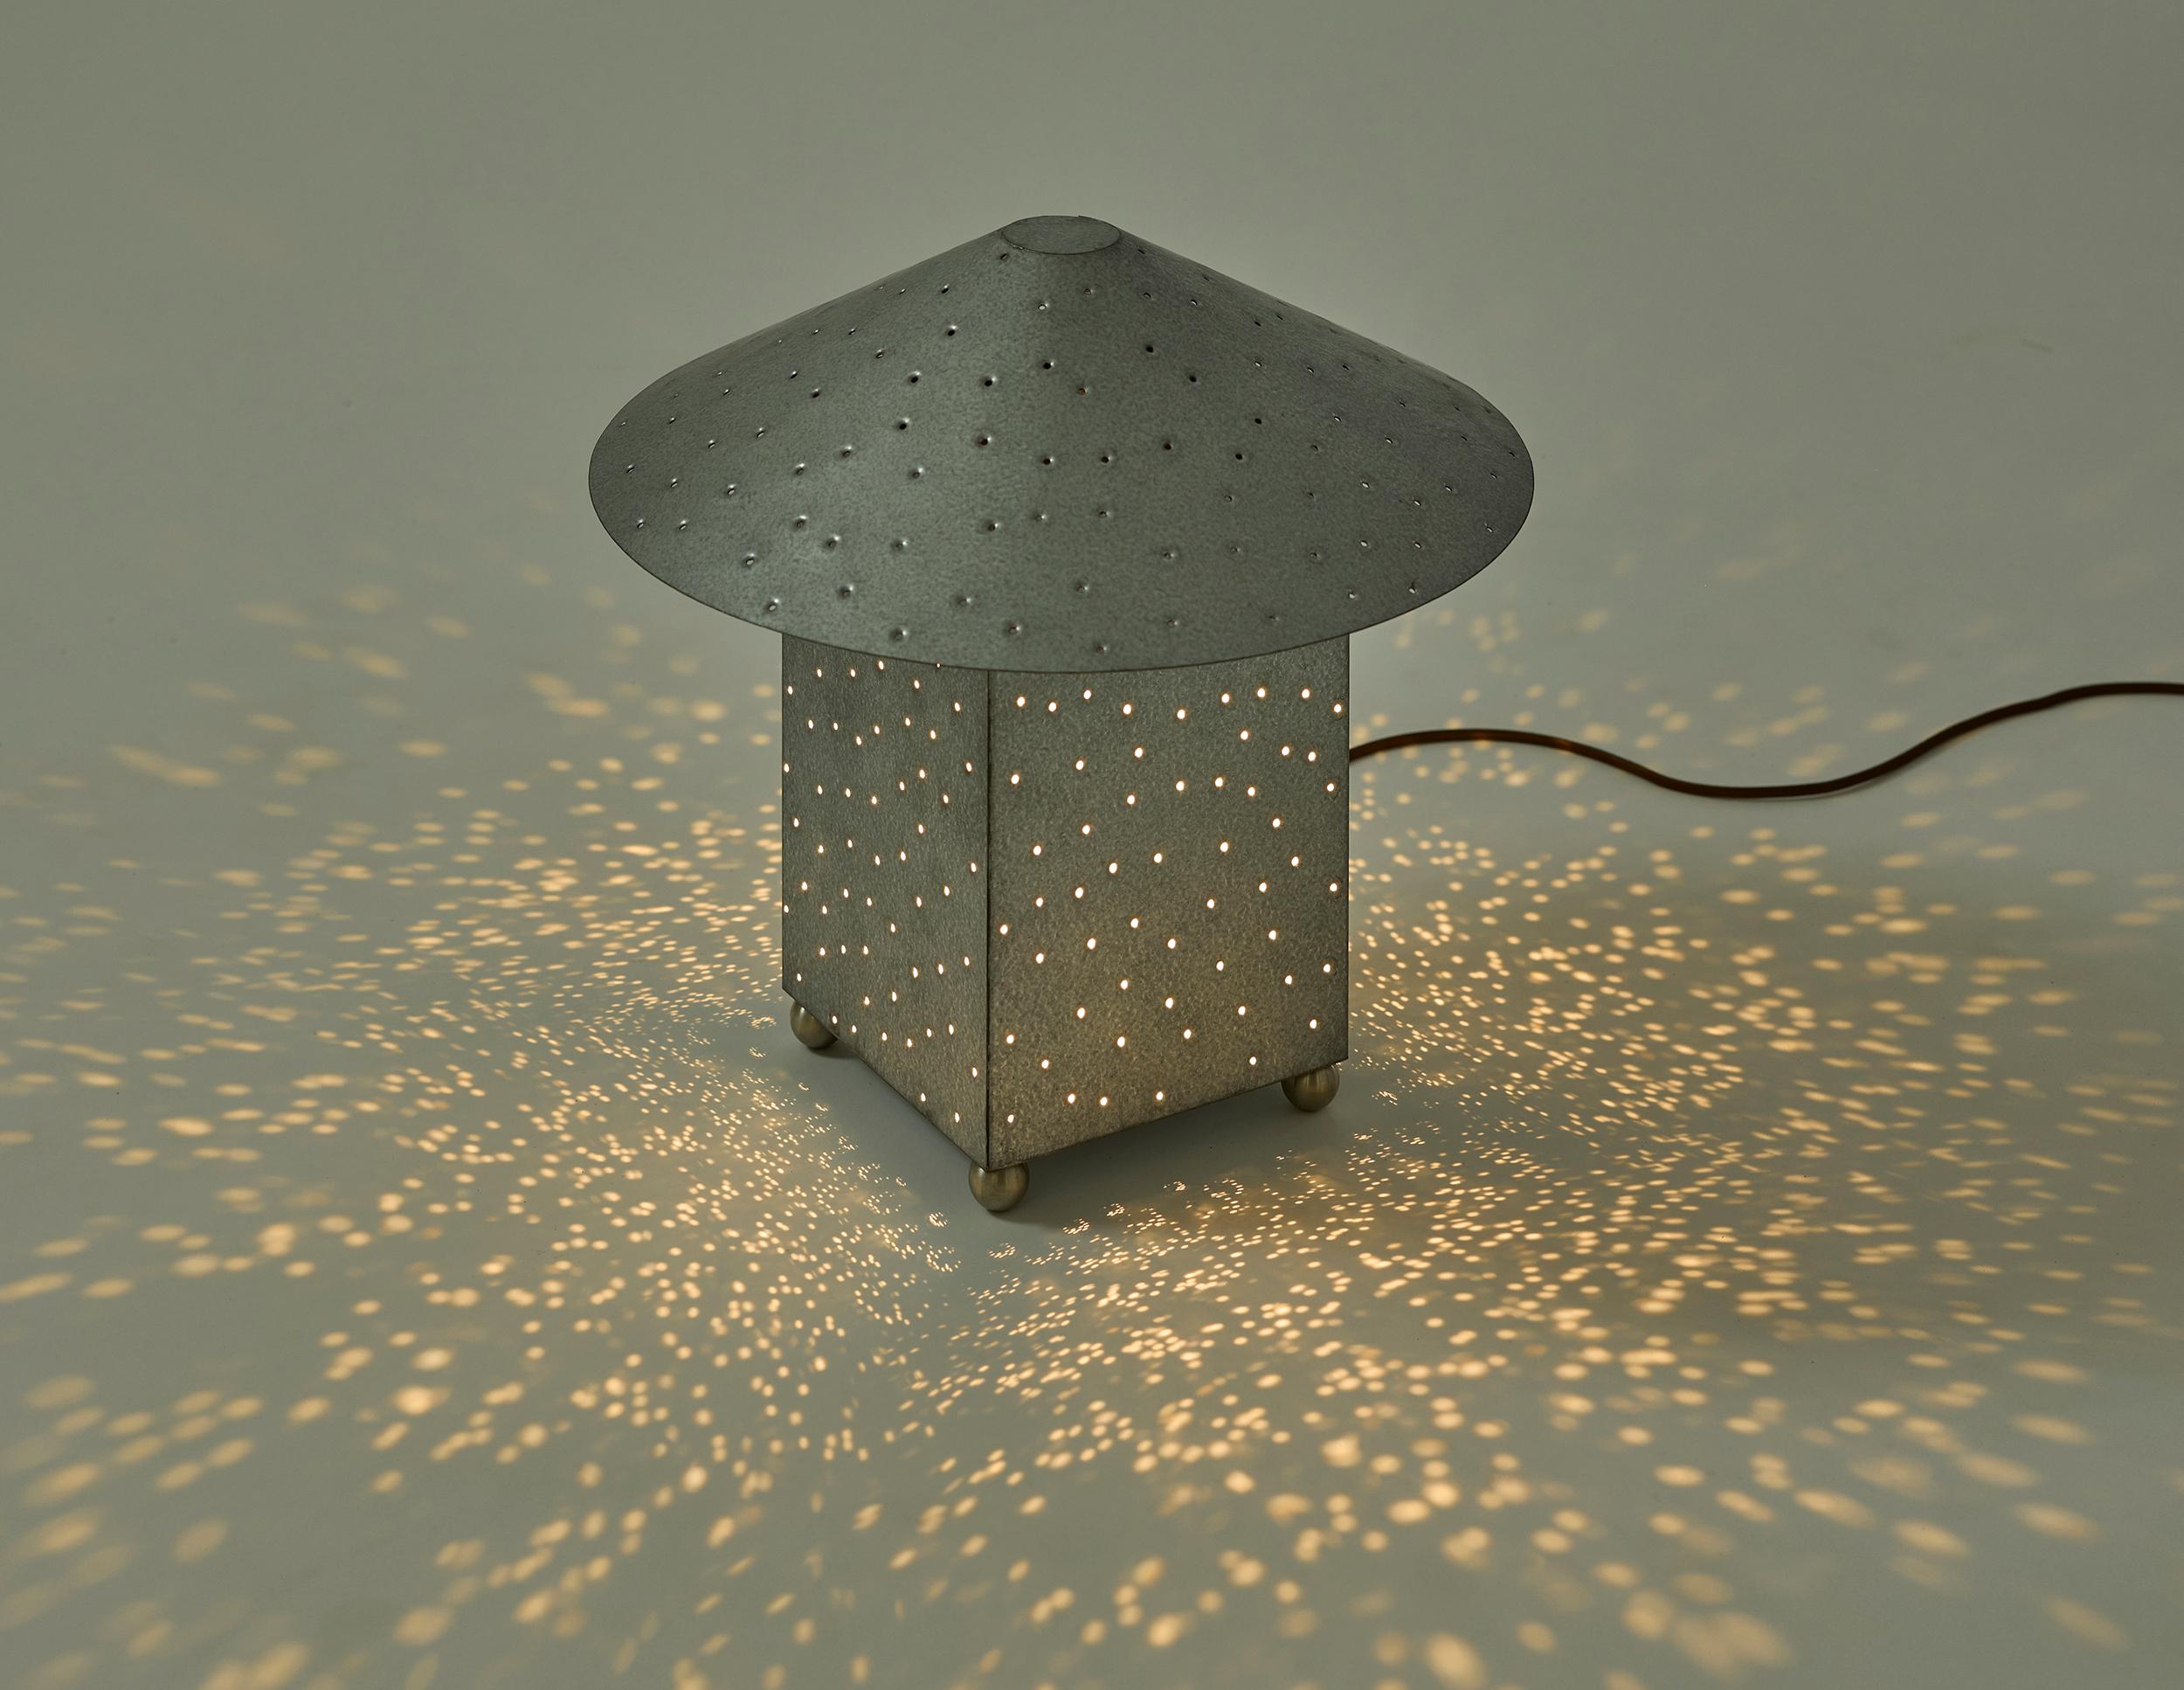 Muhlys Lin Lighting Collection'S wurde von Maya Lins Werk Ecliptic aus dem Jahr 2001 inspiriert, in dem die Sterne als Lichtpunkte in einen Betonboden eingelassen wurden. In Anlehnung an den abstrakten Nachthimmel - und als Hommage an die